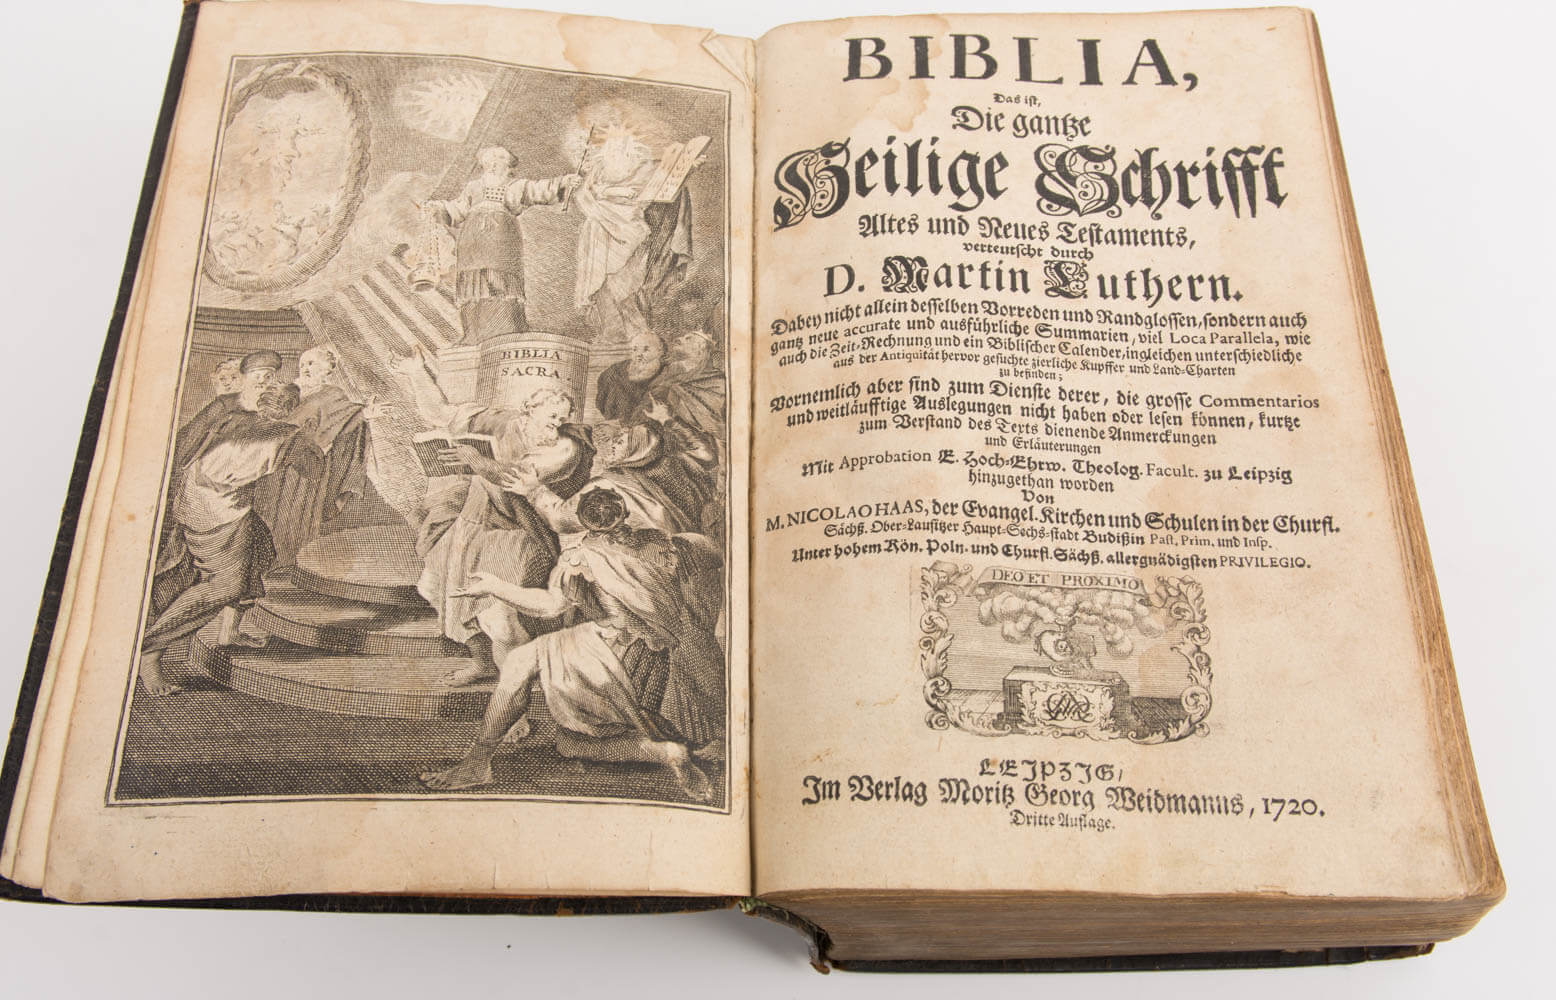  /></a><figcaption>Biblia germanica, Leipzig, 1720. Sehr gut erhaltenes Titelblatt. </figcaption></figure><p><strong>Wie hoch ist der Wert einer alten Bibel?</strong></p><p>Der Wert alter Bibeln schwankt je nach Alter und Eigenschaften sehr stark. Natürlich gilt: Je älter die Bibel, desto höher der Preis – Bibeln aus dem 17. oder sogar 16. Jahrhundert sind deutlich seltener und somit wertvoller als spätere Exemplare. Wichtigster Anhaltspunkt ist das Titelblatt, auf dem Bibelausgabe, Jahr, Verlagsort und Bezüge vermerkt sind. </p><p>Auch Künstlerbibeln, besondere Illustrationen, Erstausgaben oder seltene Bibeln können höhere Preise erzielen. Katholische Bibeln sind im Allgemeinen seltener als protestantische Bibeln. </p><p></p><figure ><img class=